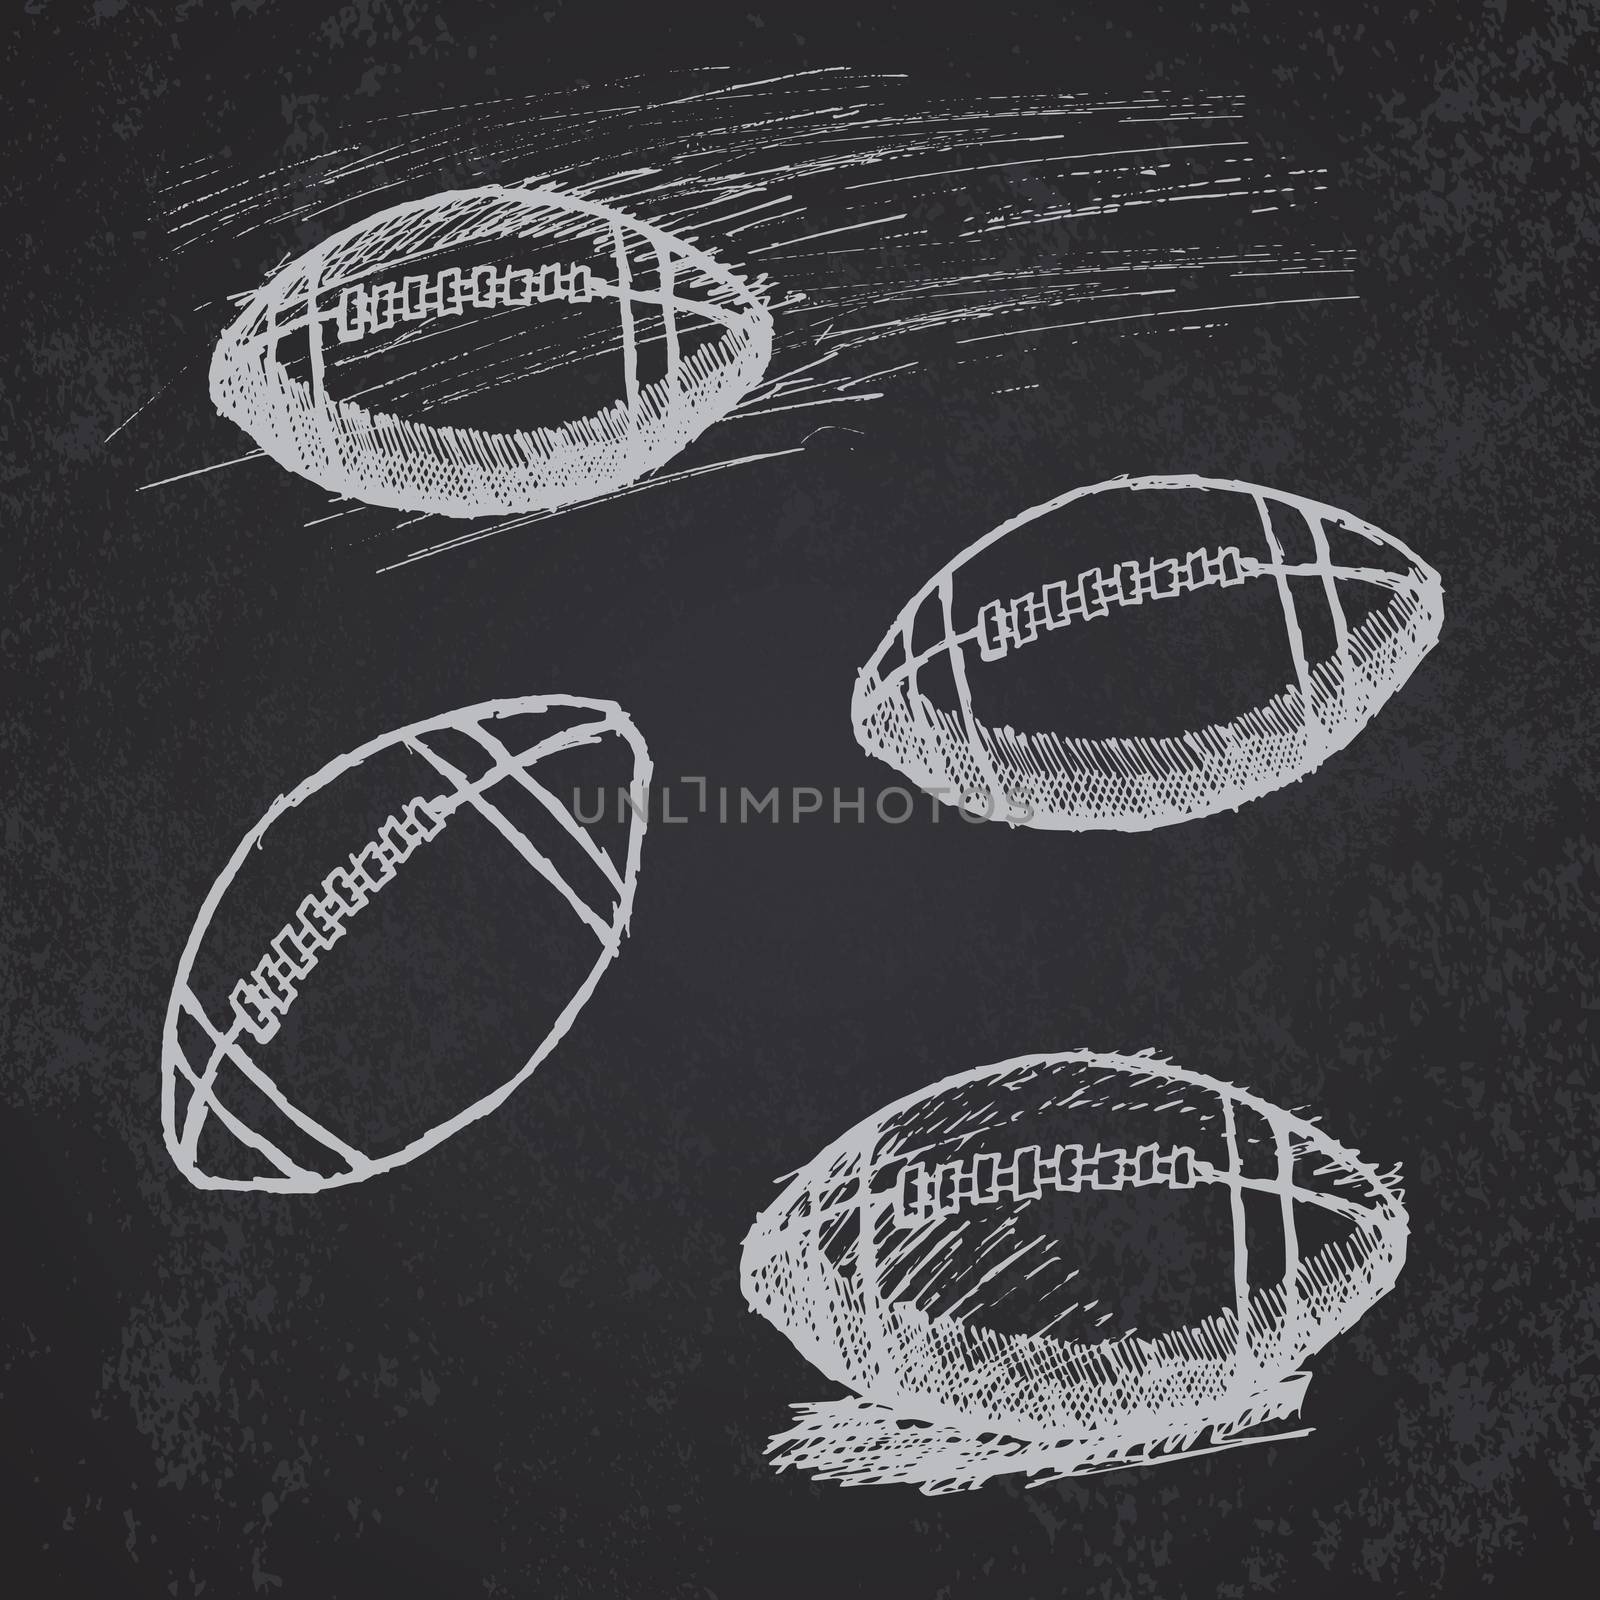 Rugby American Football sketch set on blackboard by Lemon_workshop